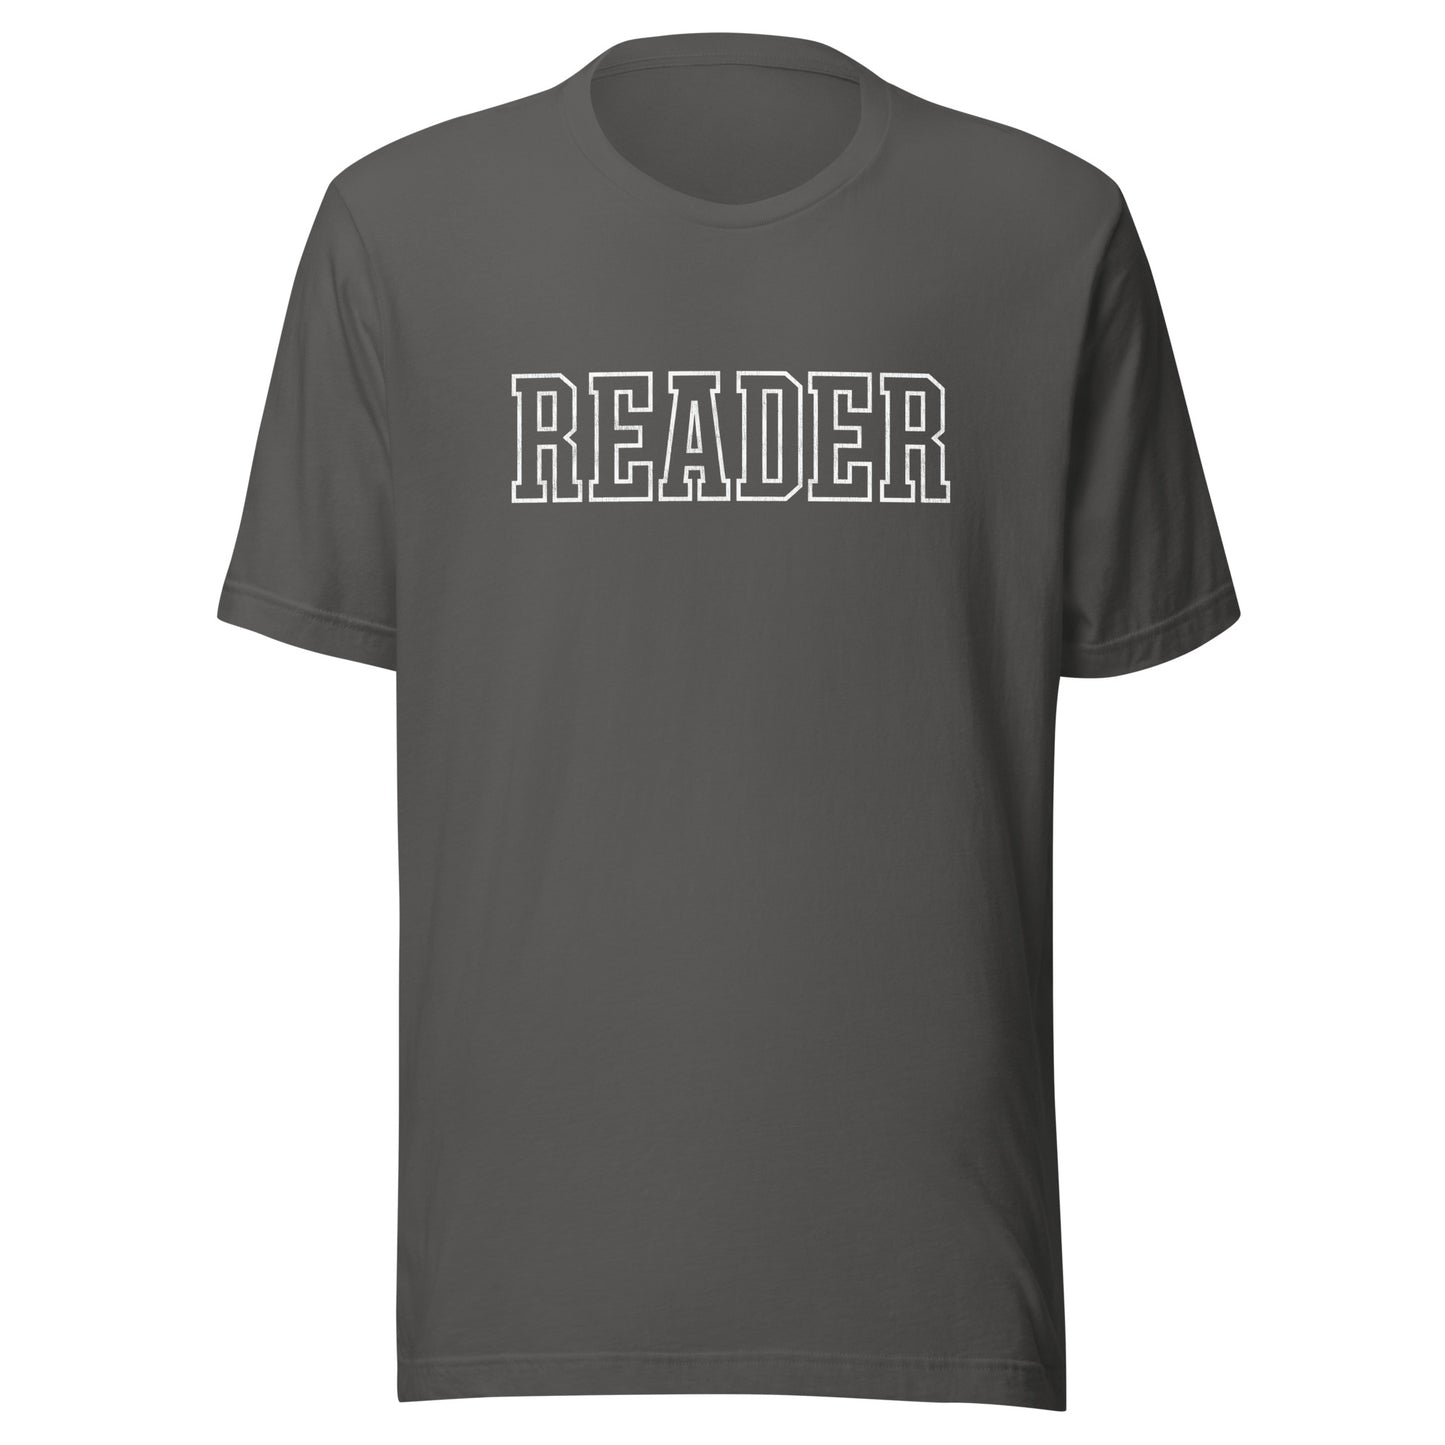 reader varsity t-shirt